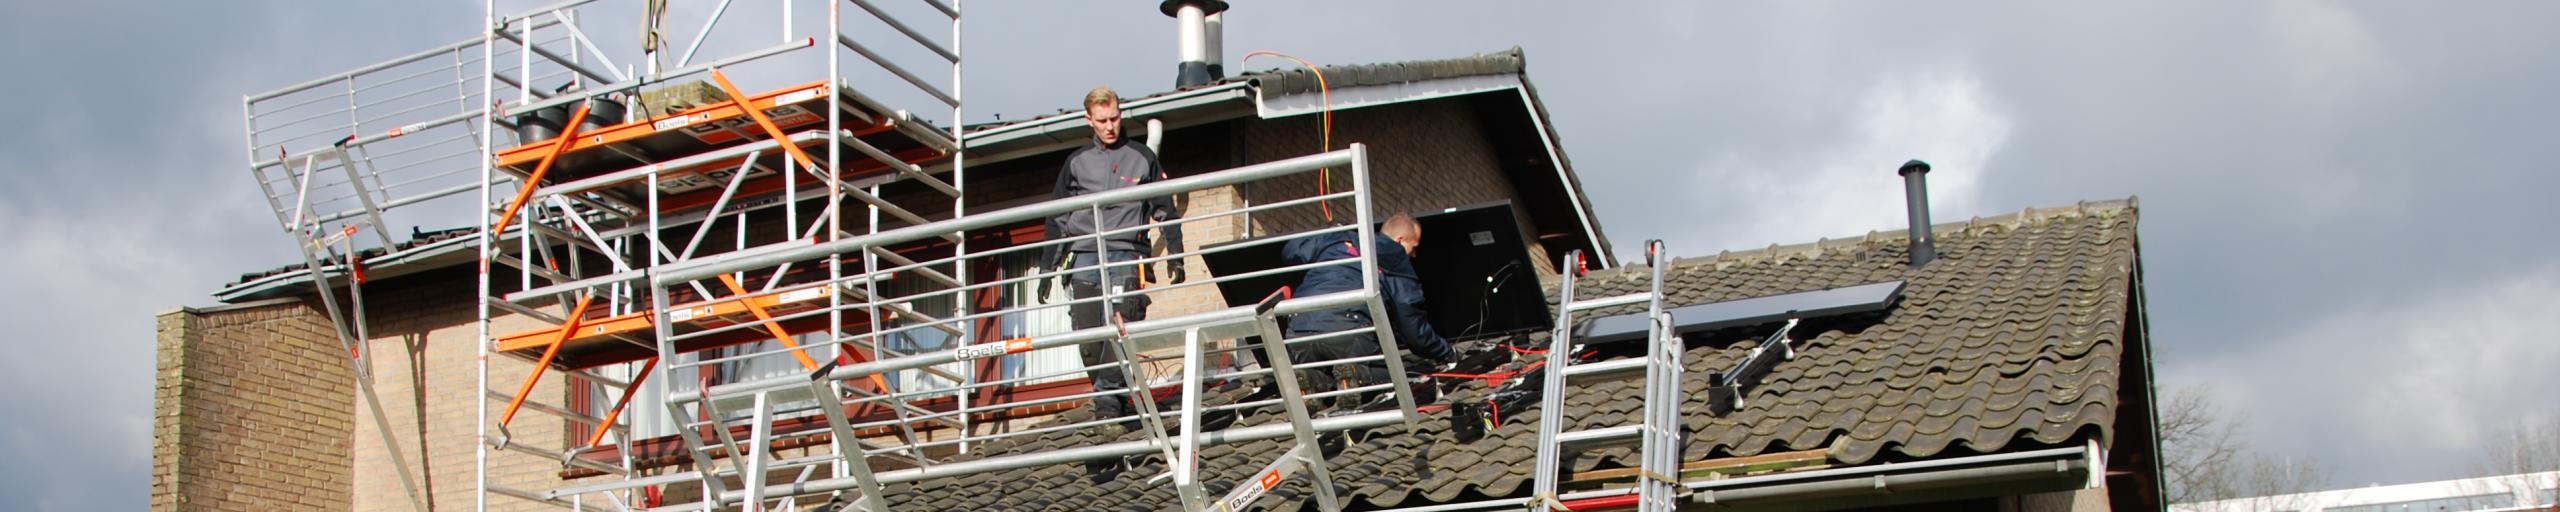 mensen aan het werk met zonnepanelen op dak leggen